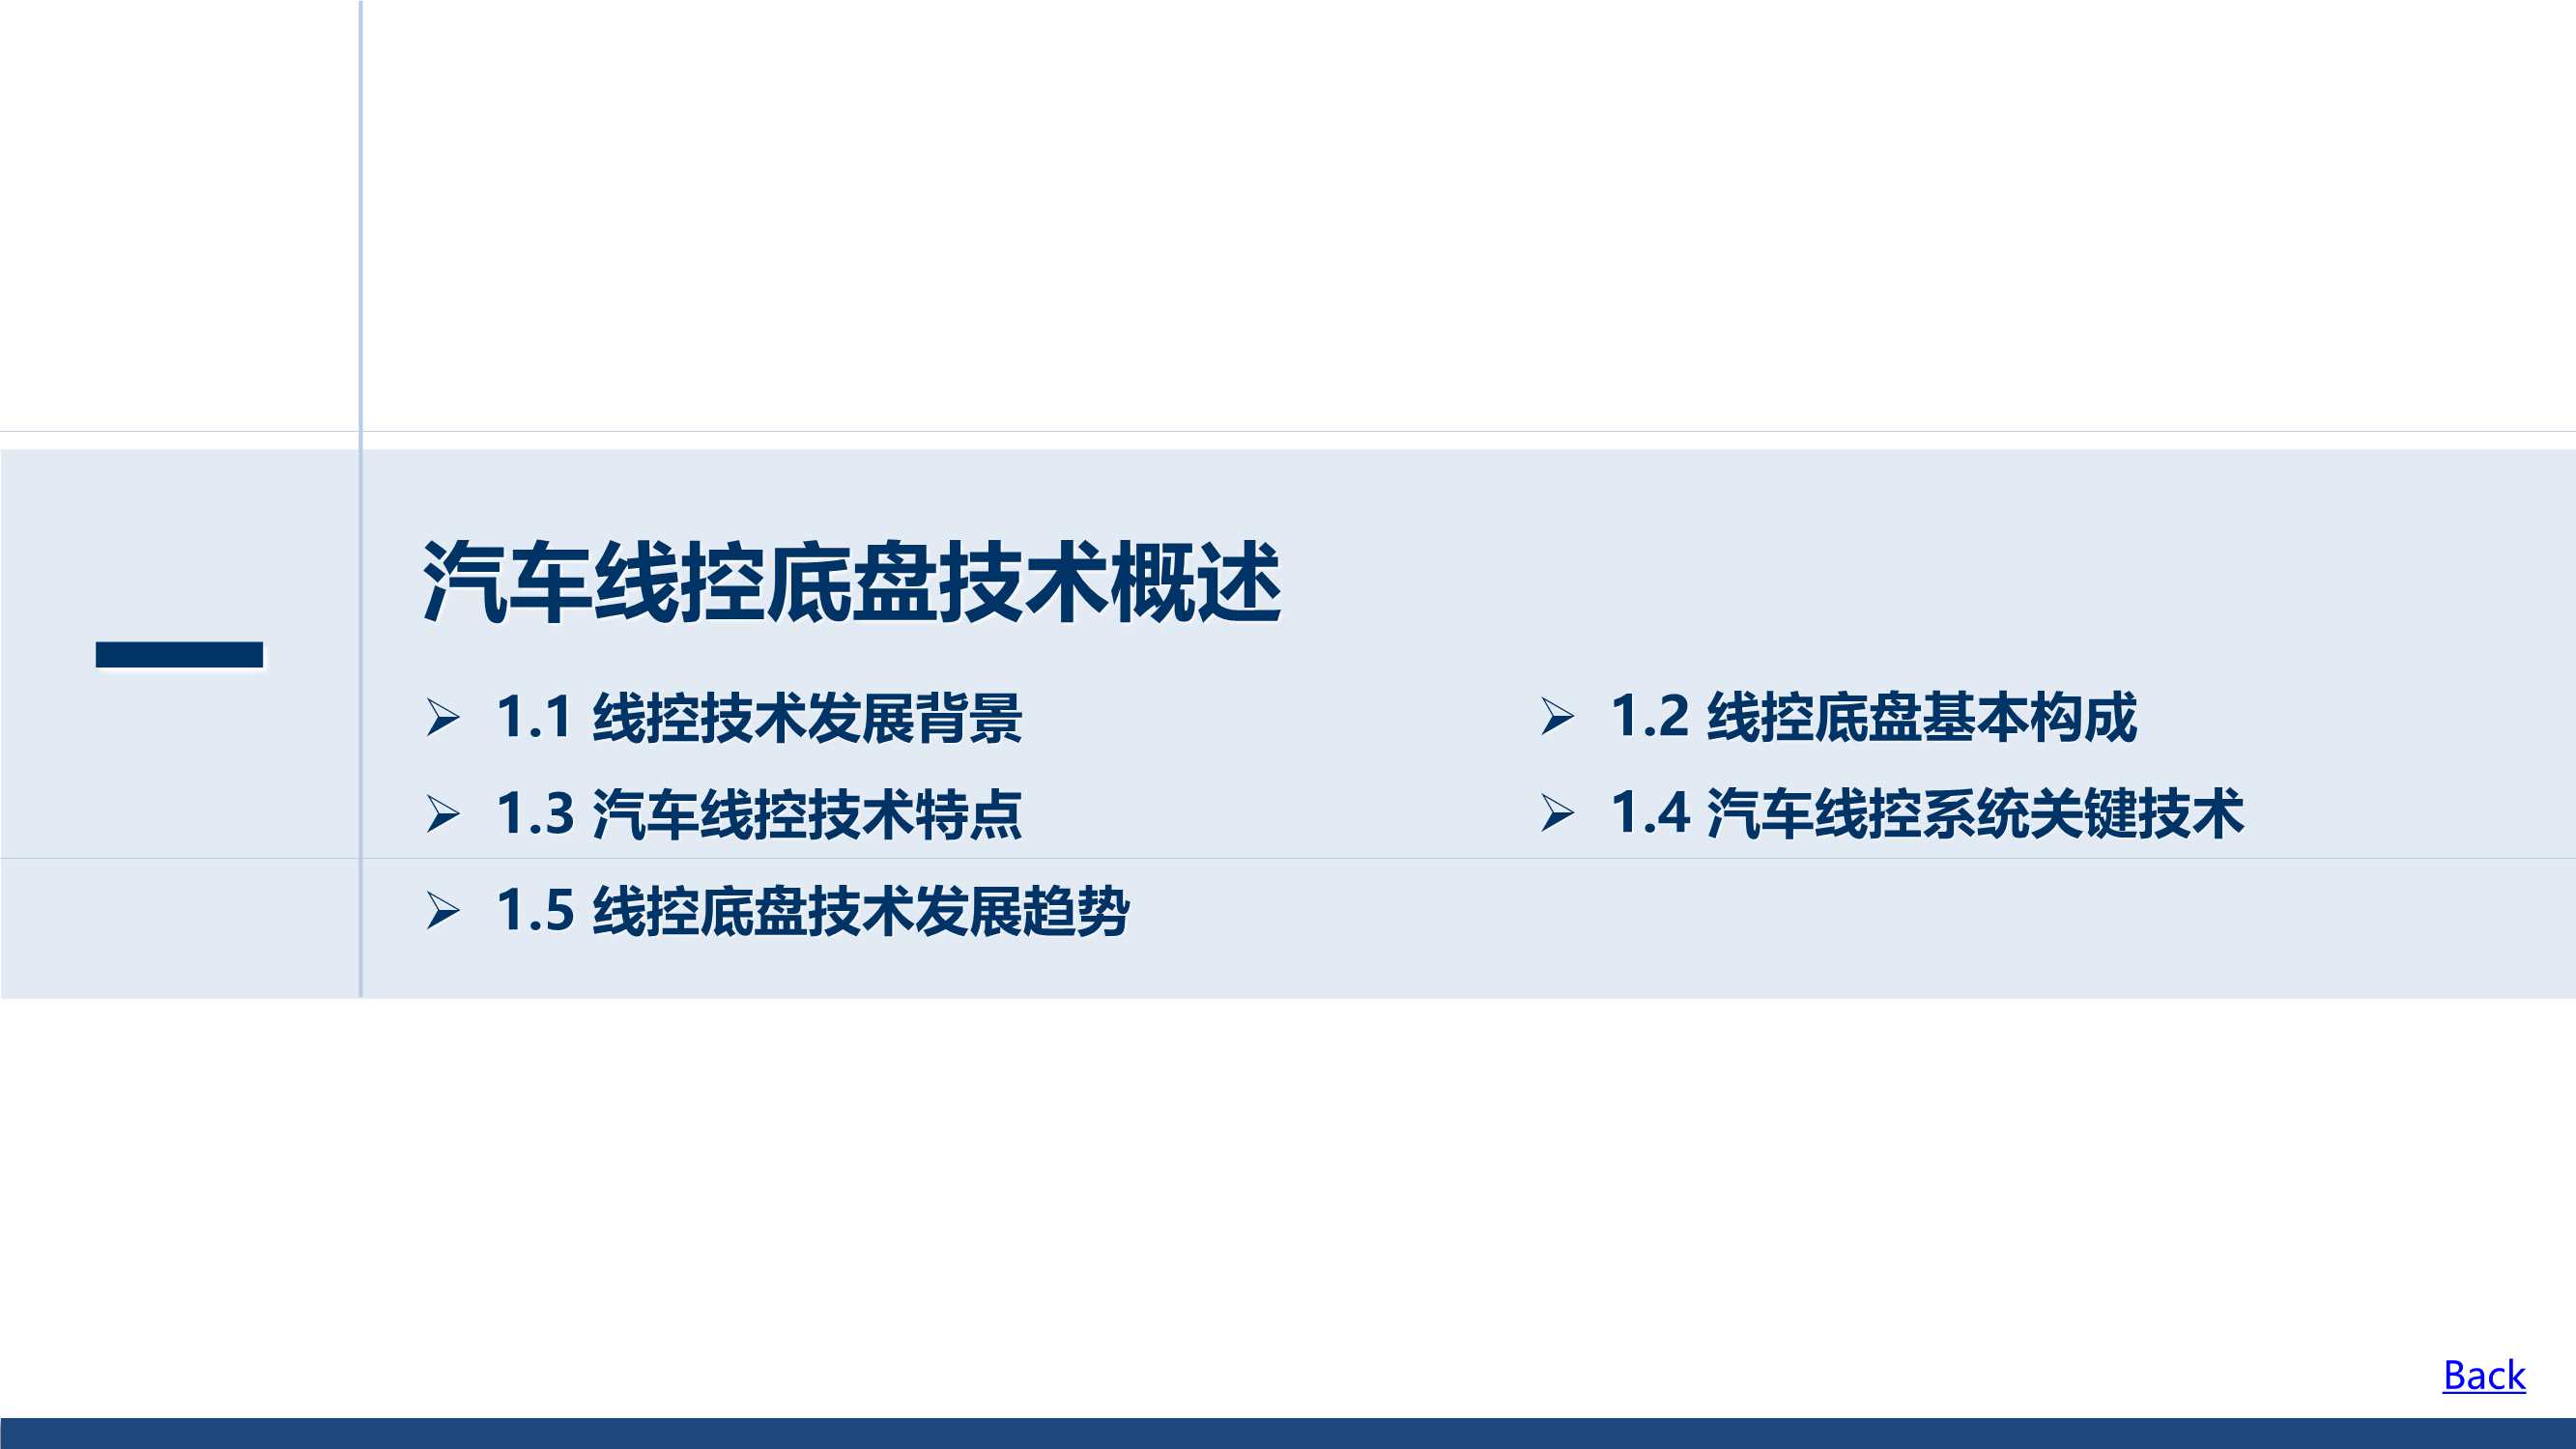 上海控安汽车研究院-基于自动驾驶的线控底盘技术现状和发展趋势-2021.12-148页